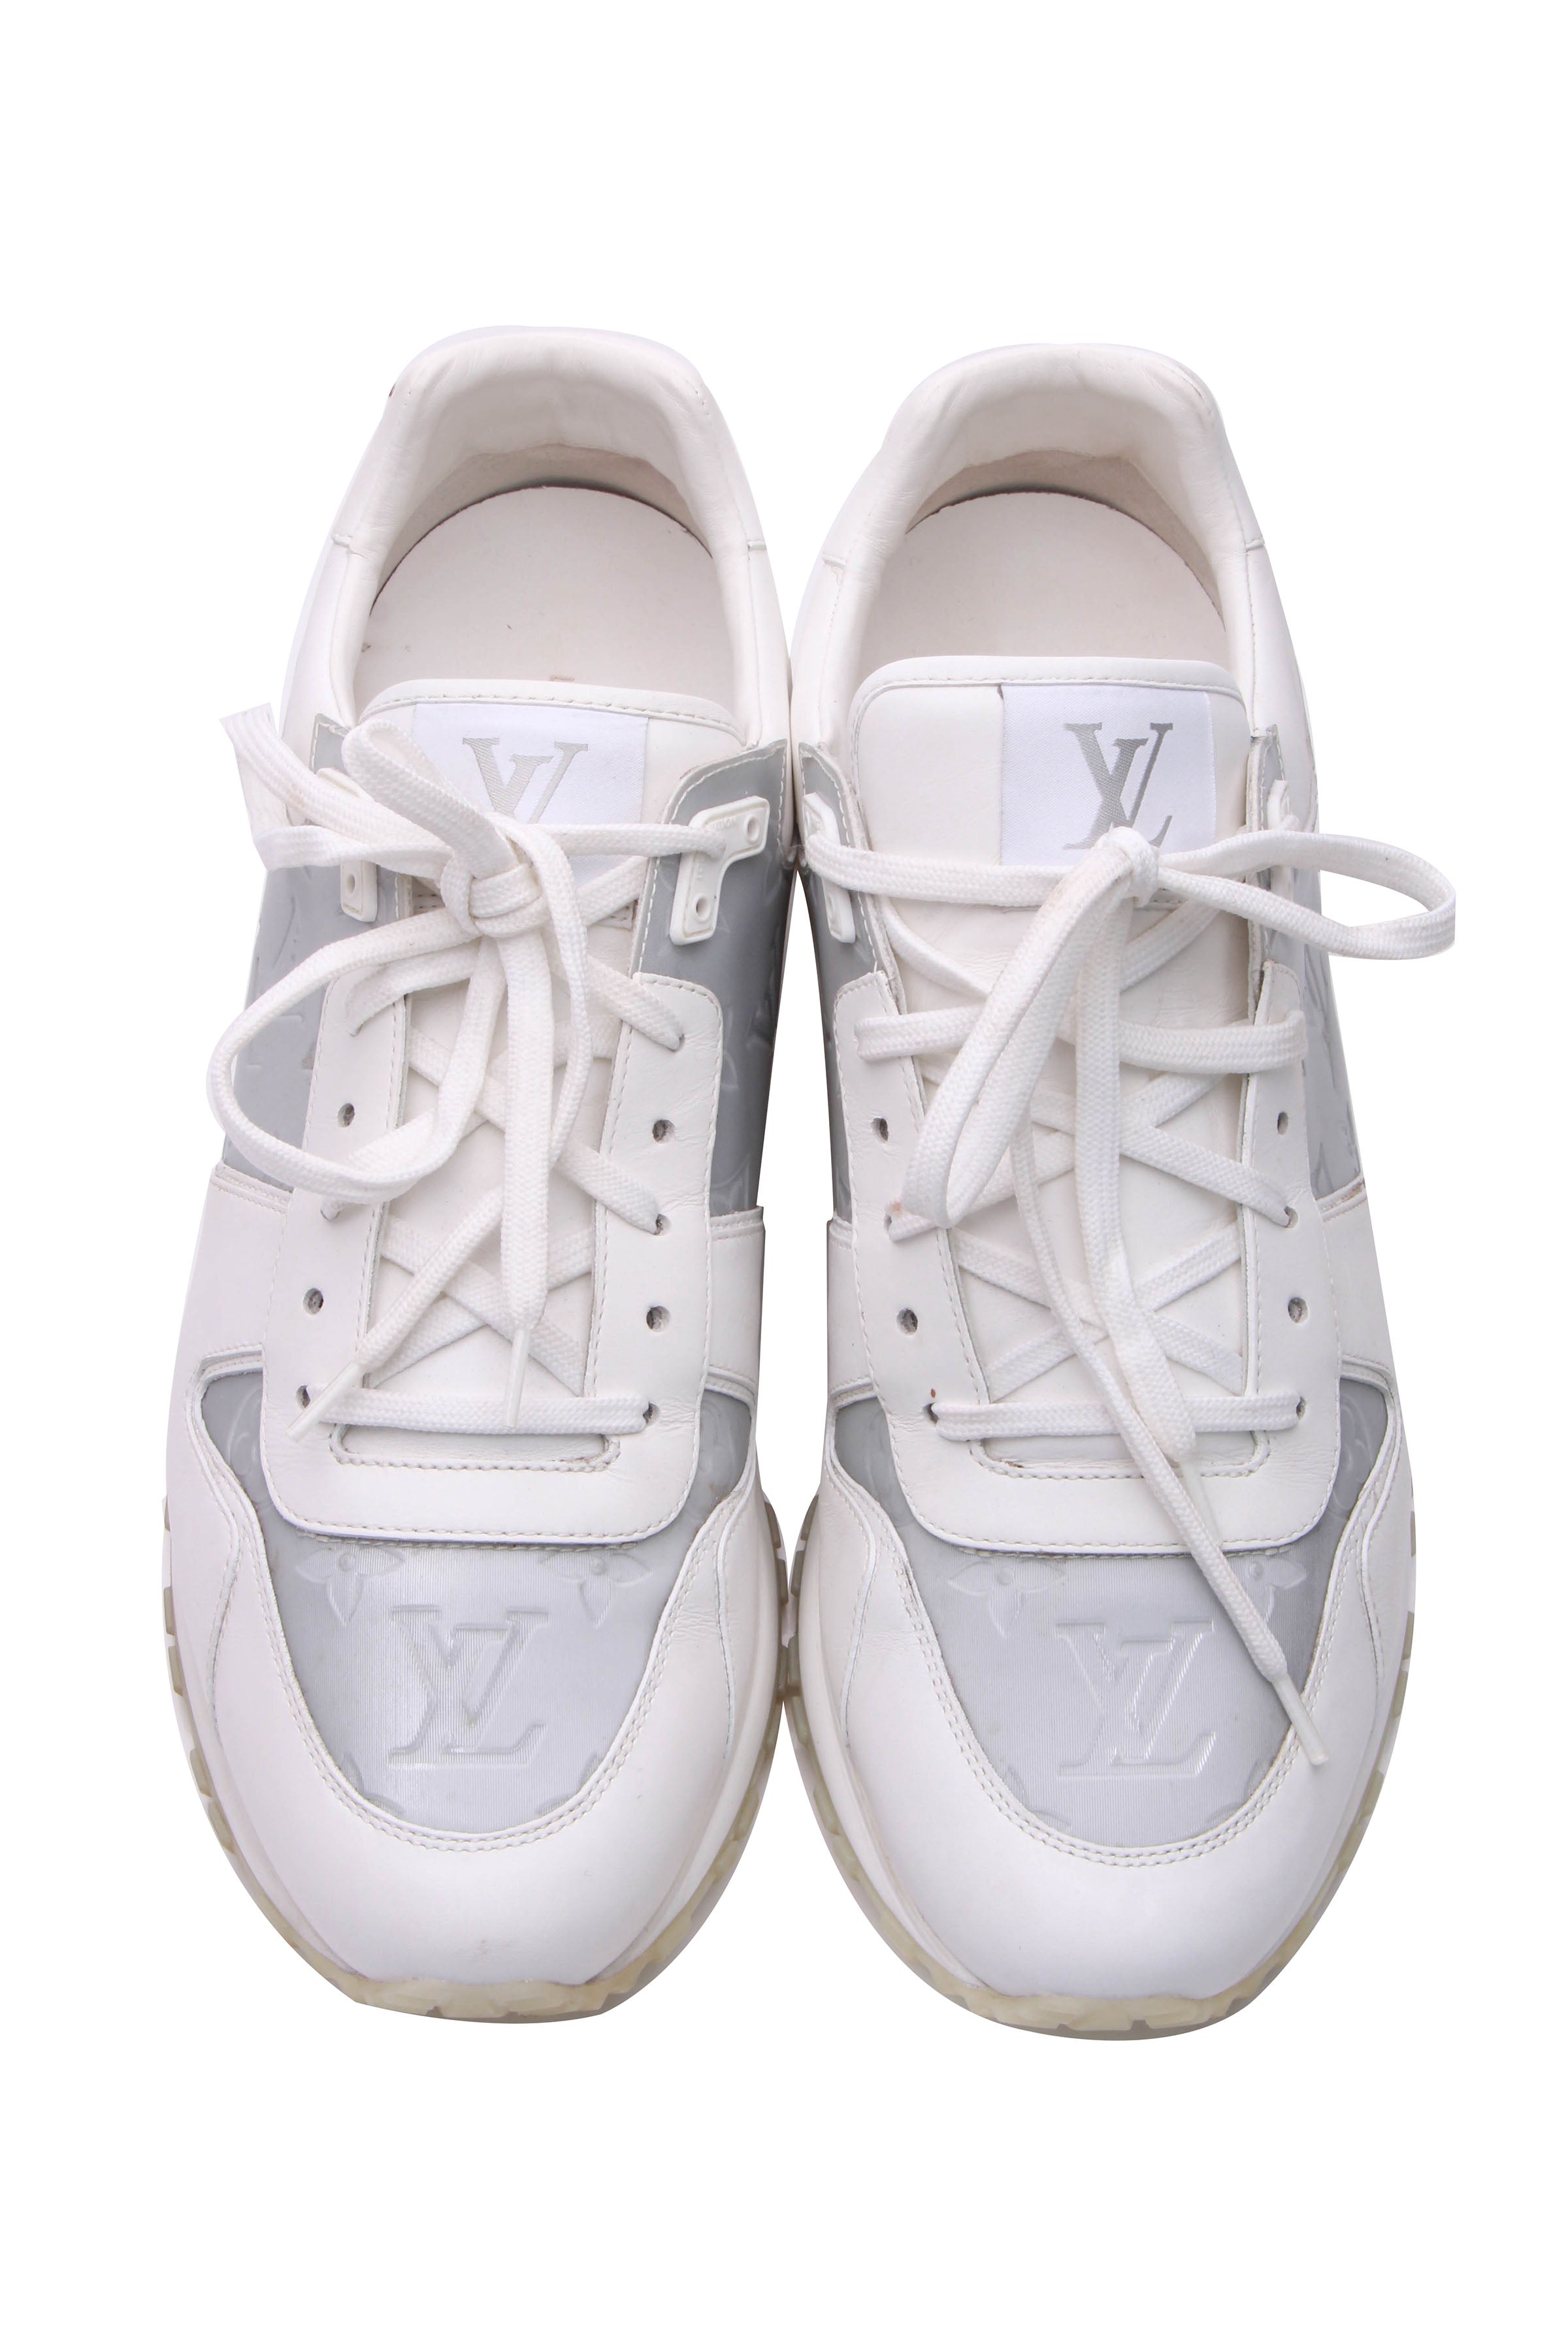 LOUIS VUITTON Glazed Calfskin Mens Beverly Hills Sneakers 5.5